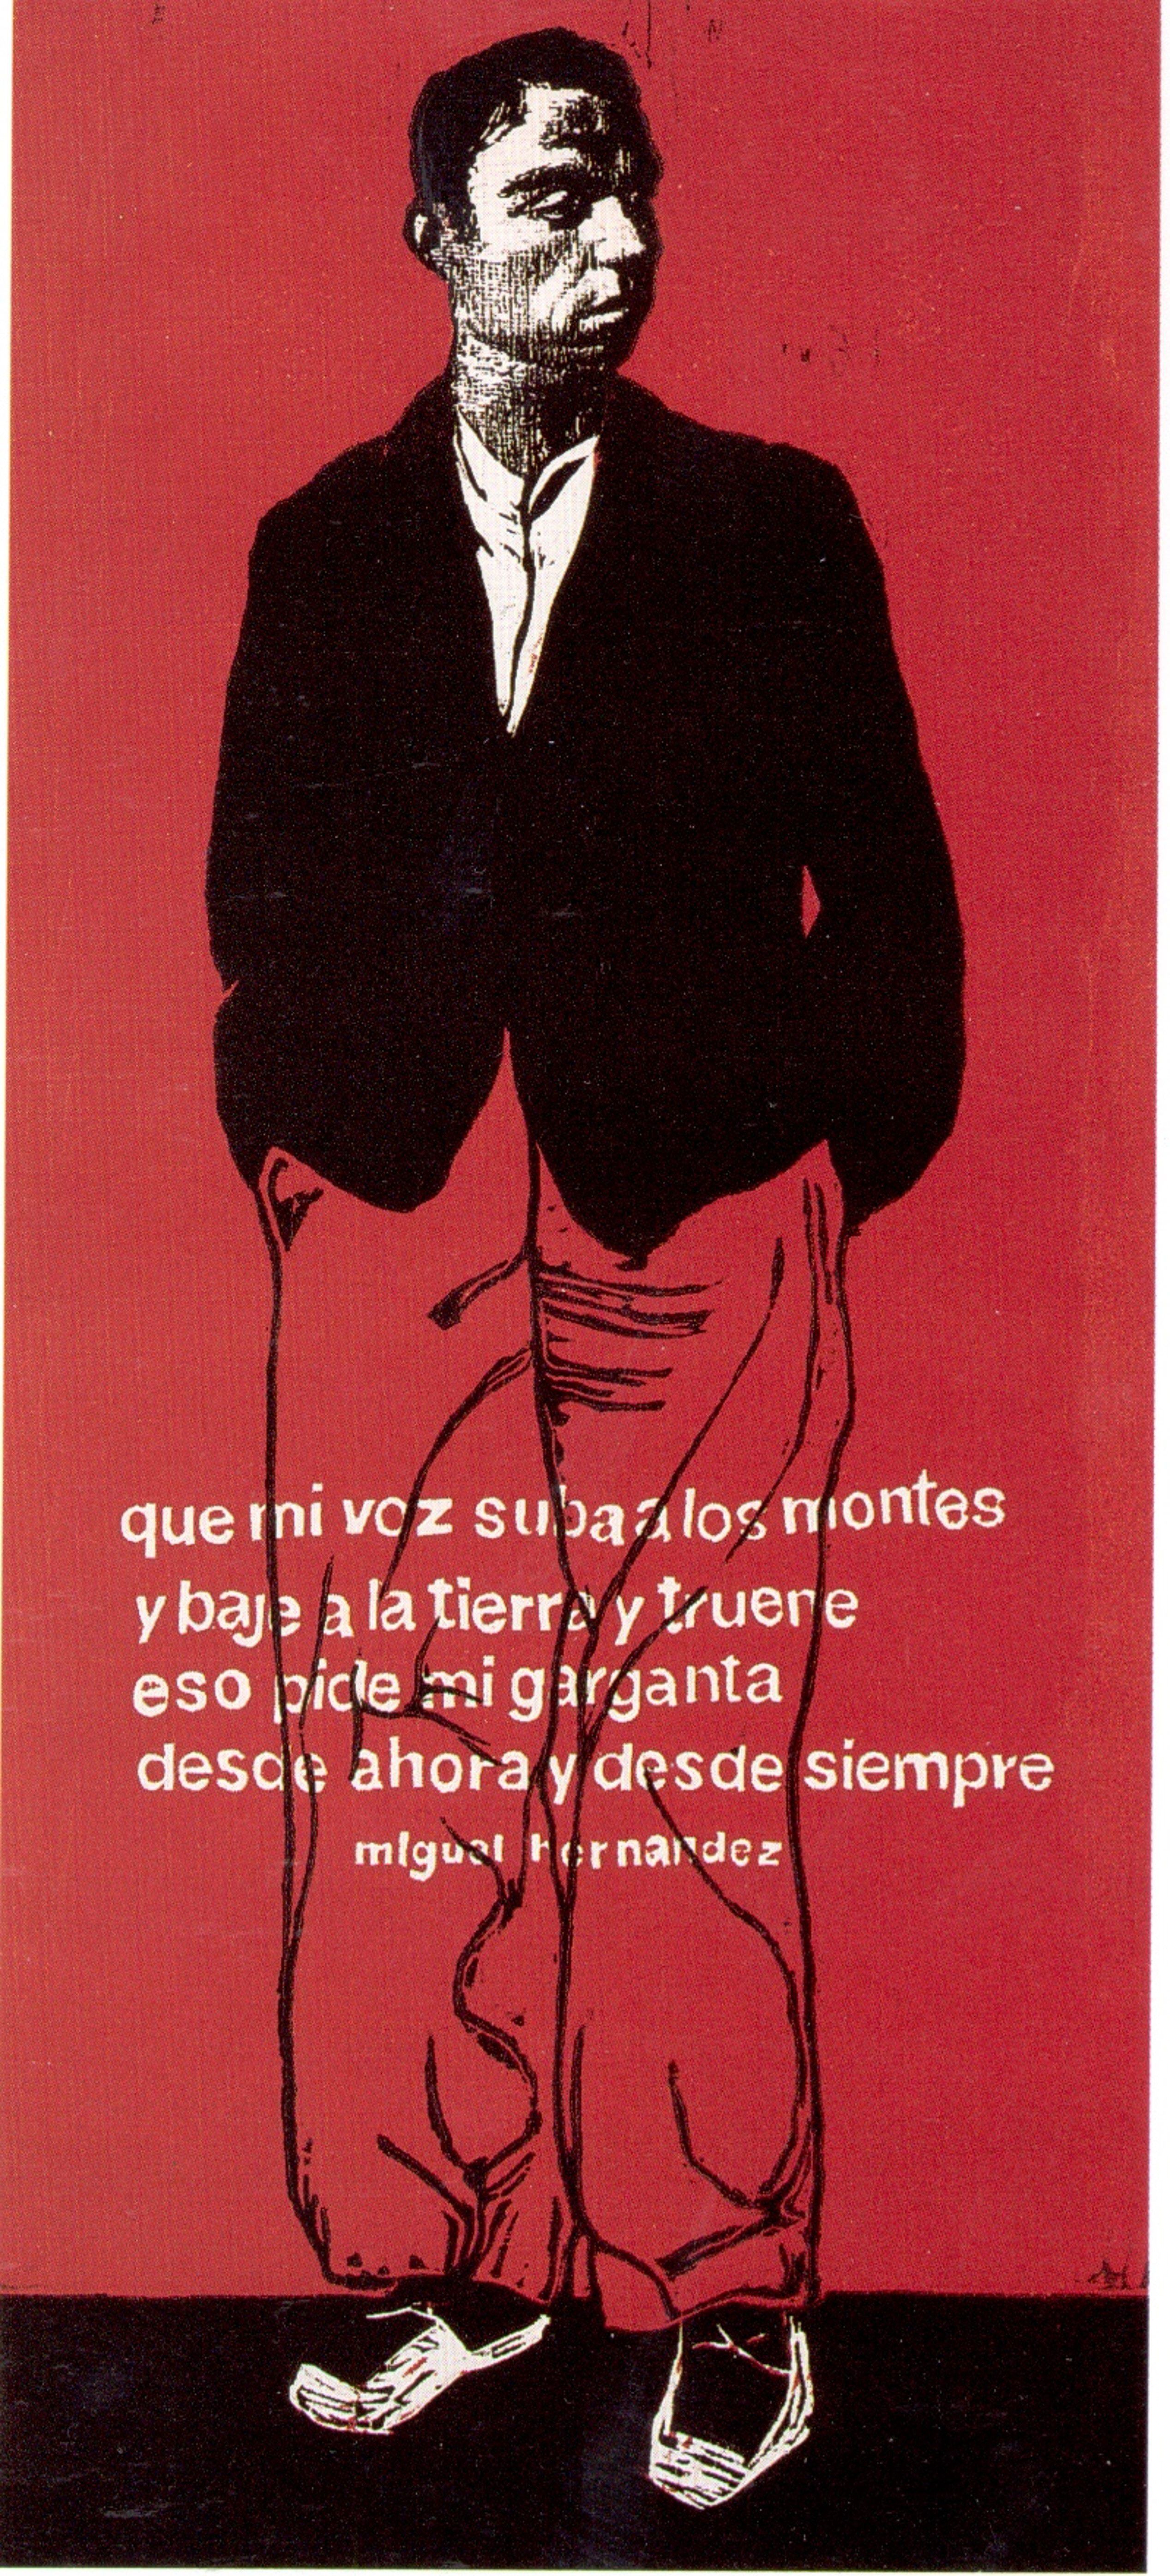 'Que mi voz suba a los montes... (Poema de Miguel Hernández)', 1965, obra de José Duarte.